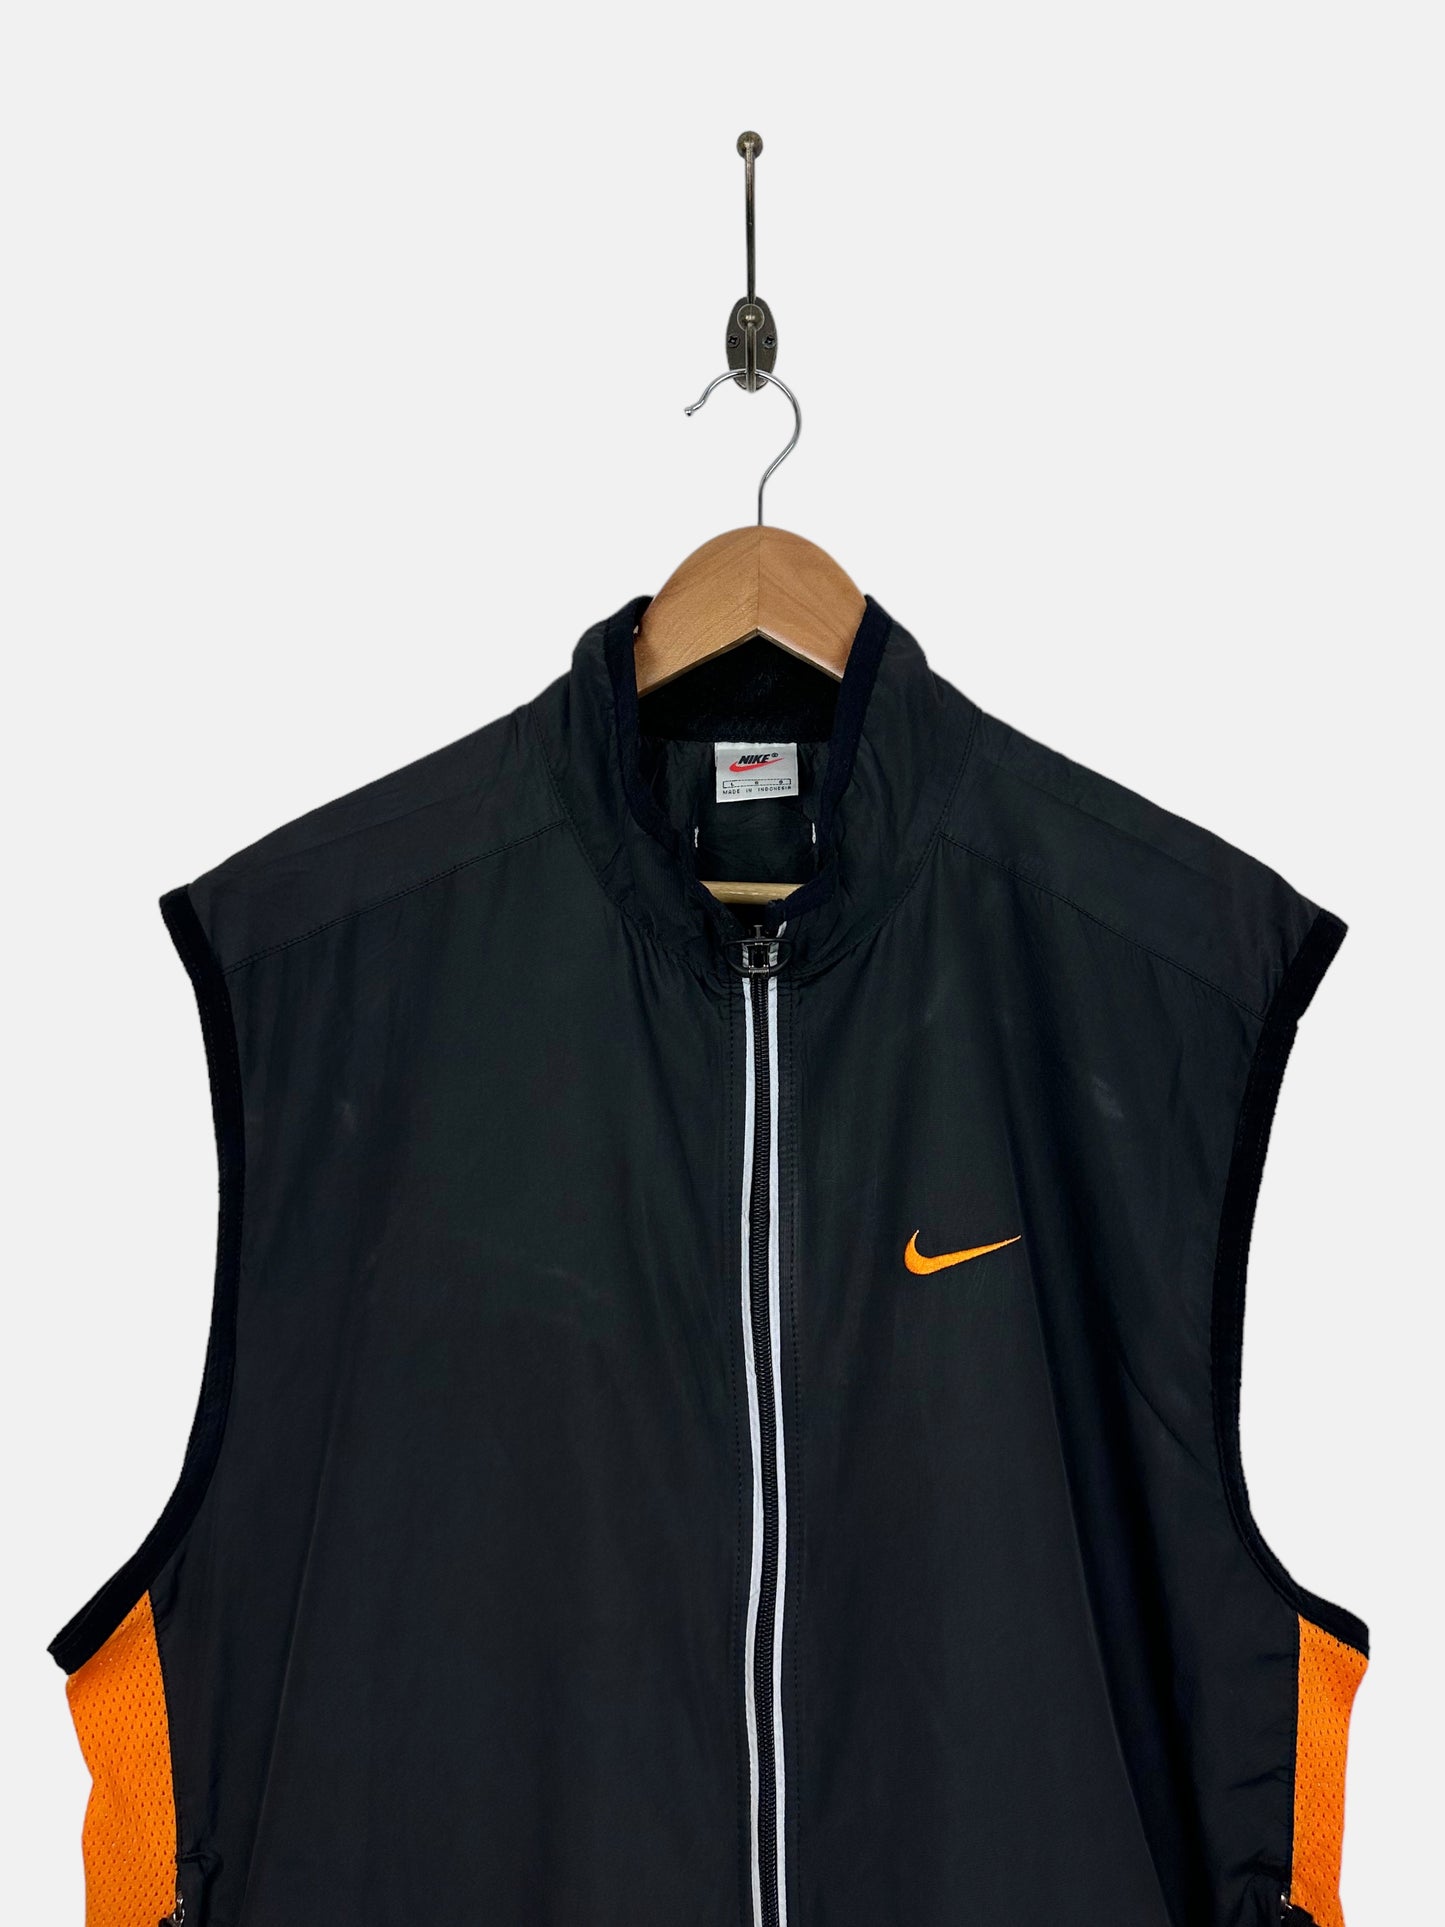 90's Nike Embroidered Vintage Vest Jacket Size M